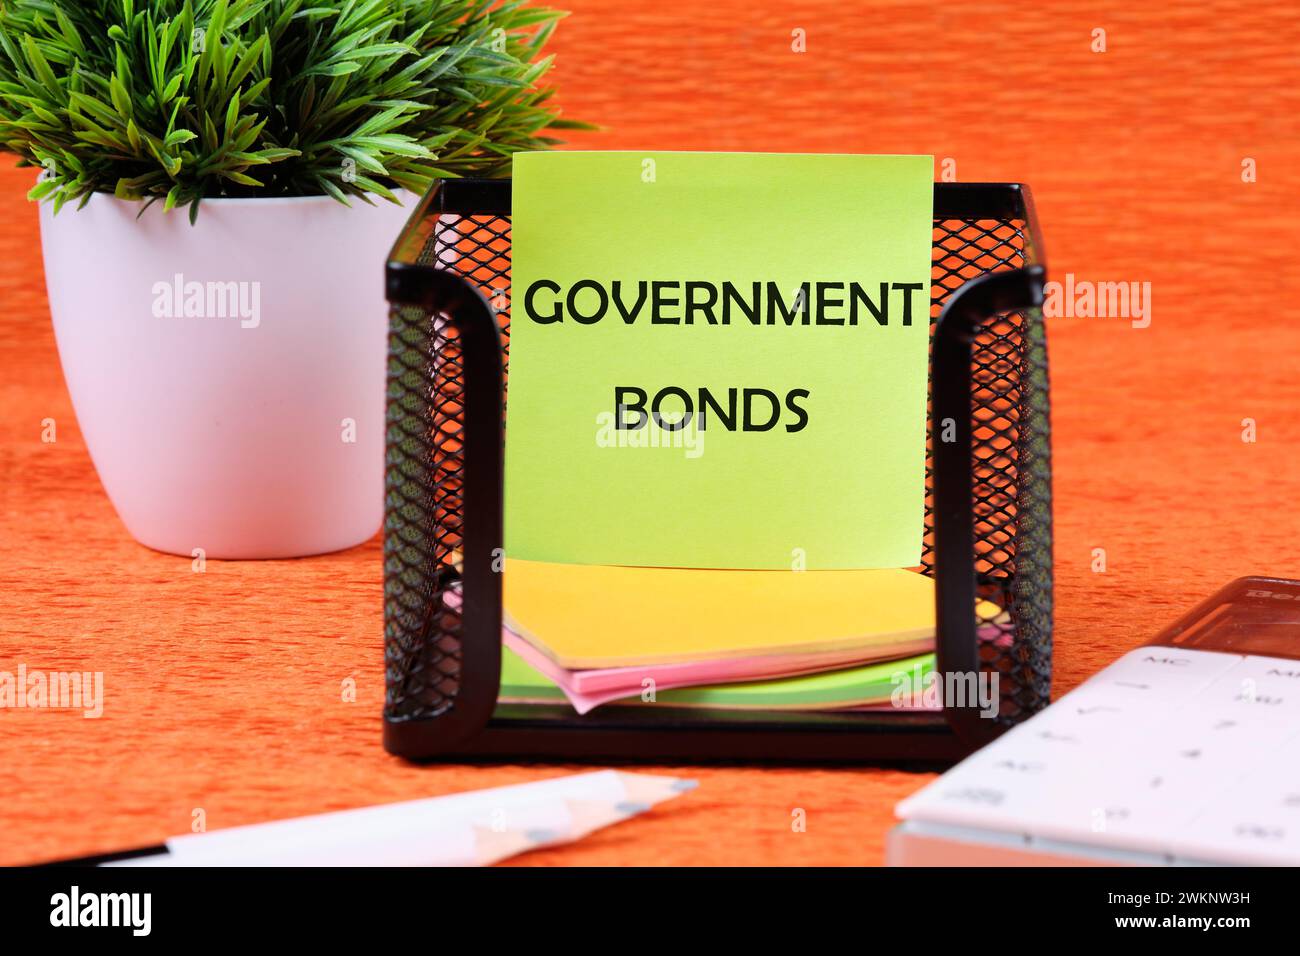 Text für Staatsanleihen auf einem grünen Aufkleber neben Bürobedarf auf orangem Hintergrund Stockfoto